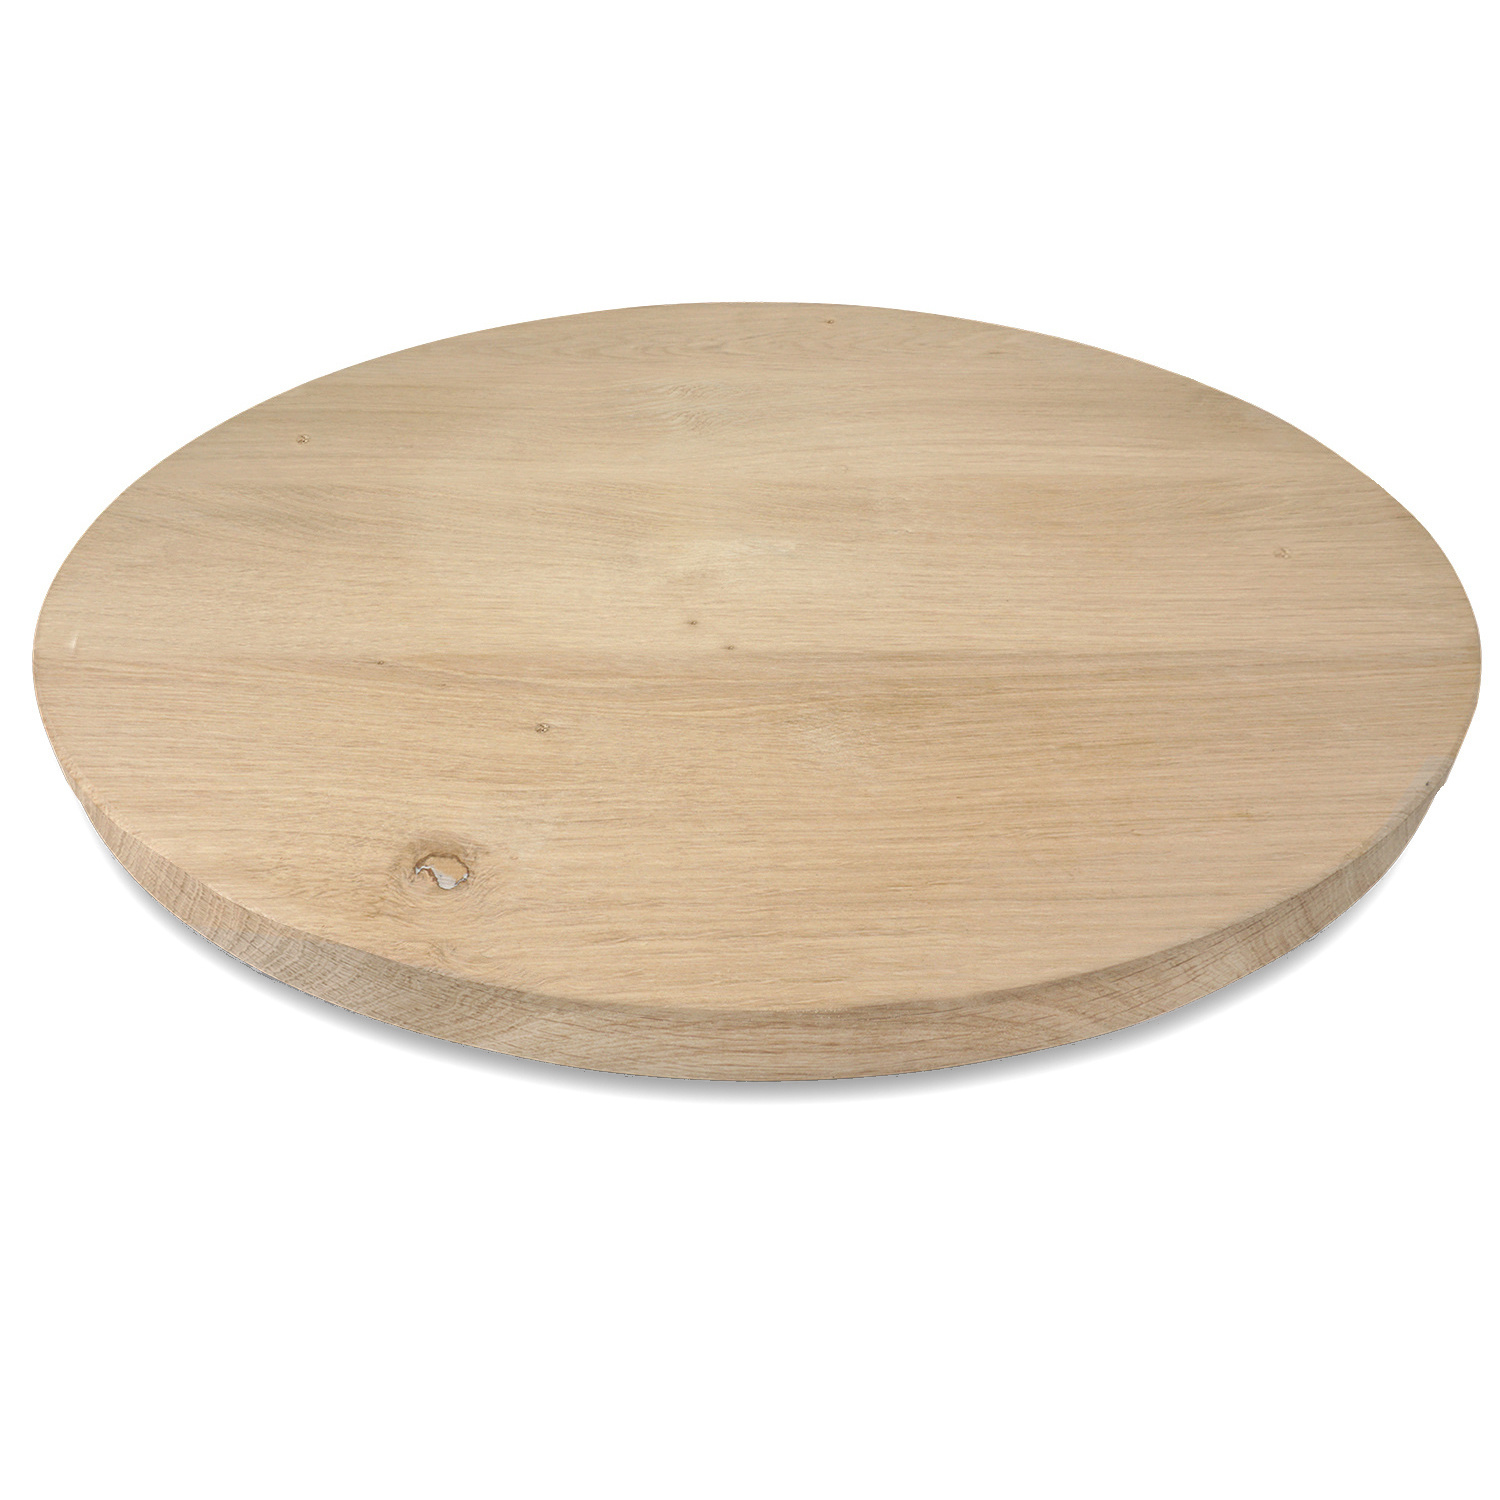  Eiken tafelblad rond - 2,7 cm dik (1-laag) - Diverse afmetingen - optioneel geborsteld - Rustiek Europees eikenhout - met brede lamellen (circa 10-12 cm) - verlijmd kd 10-12%